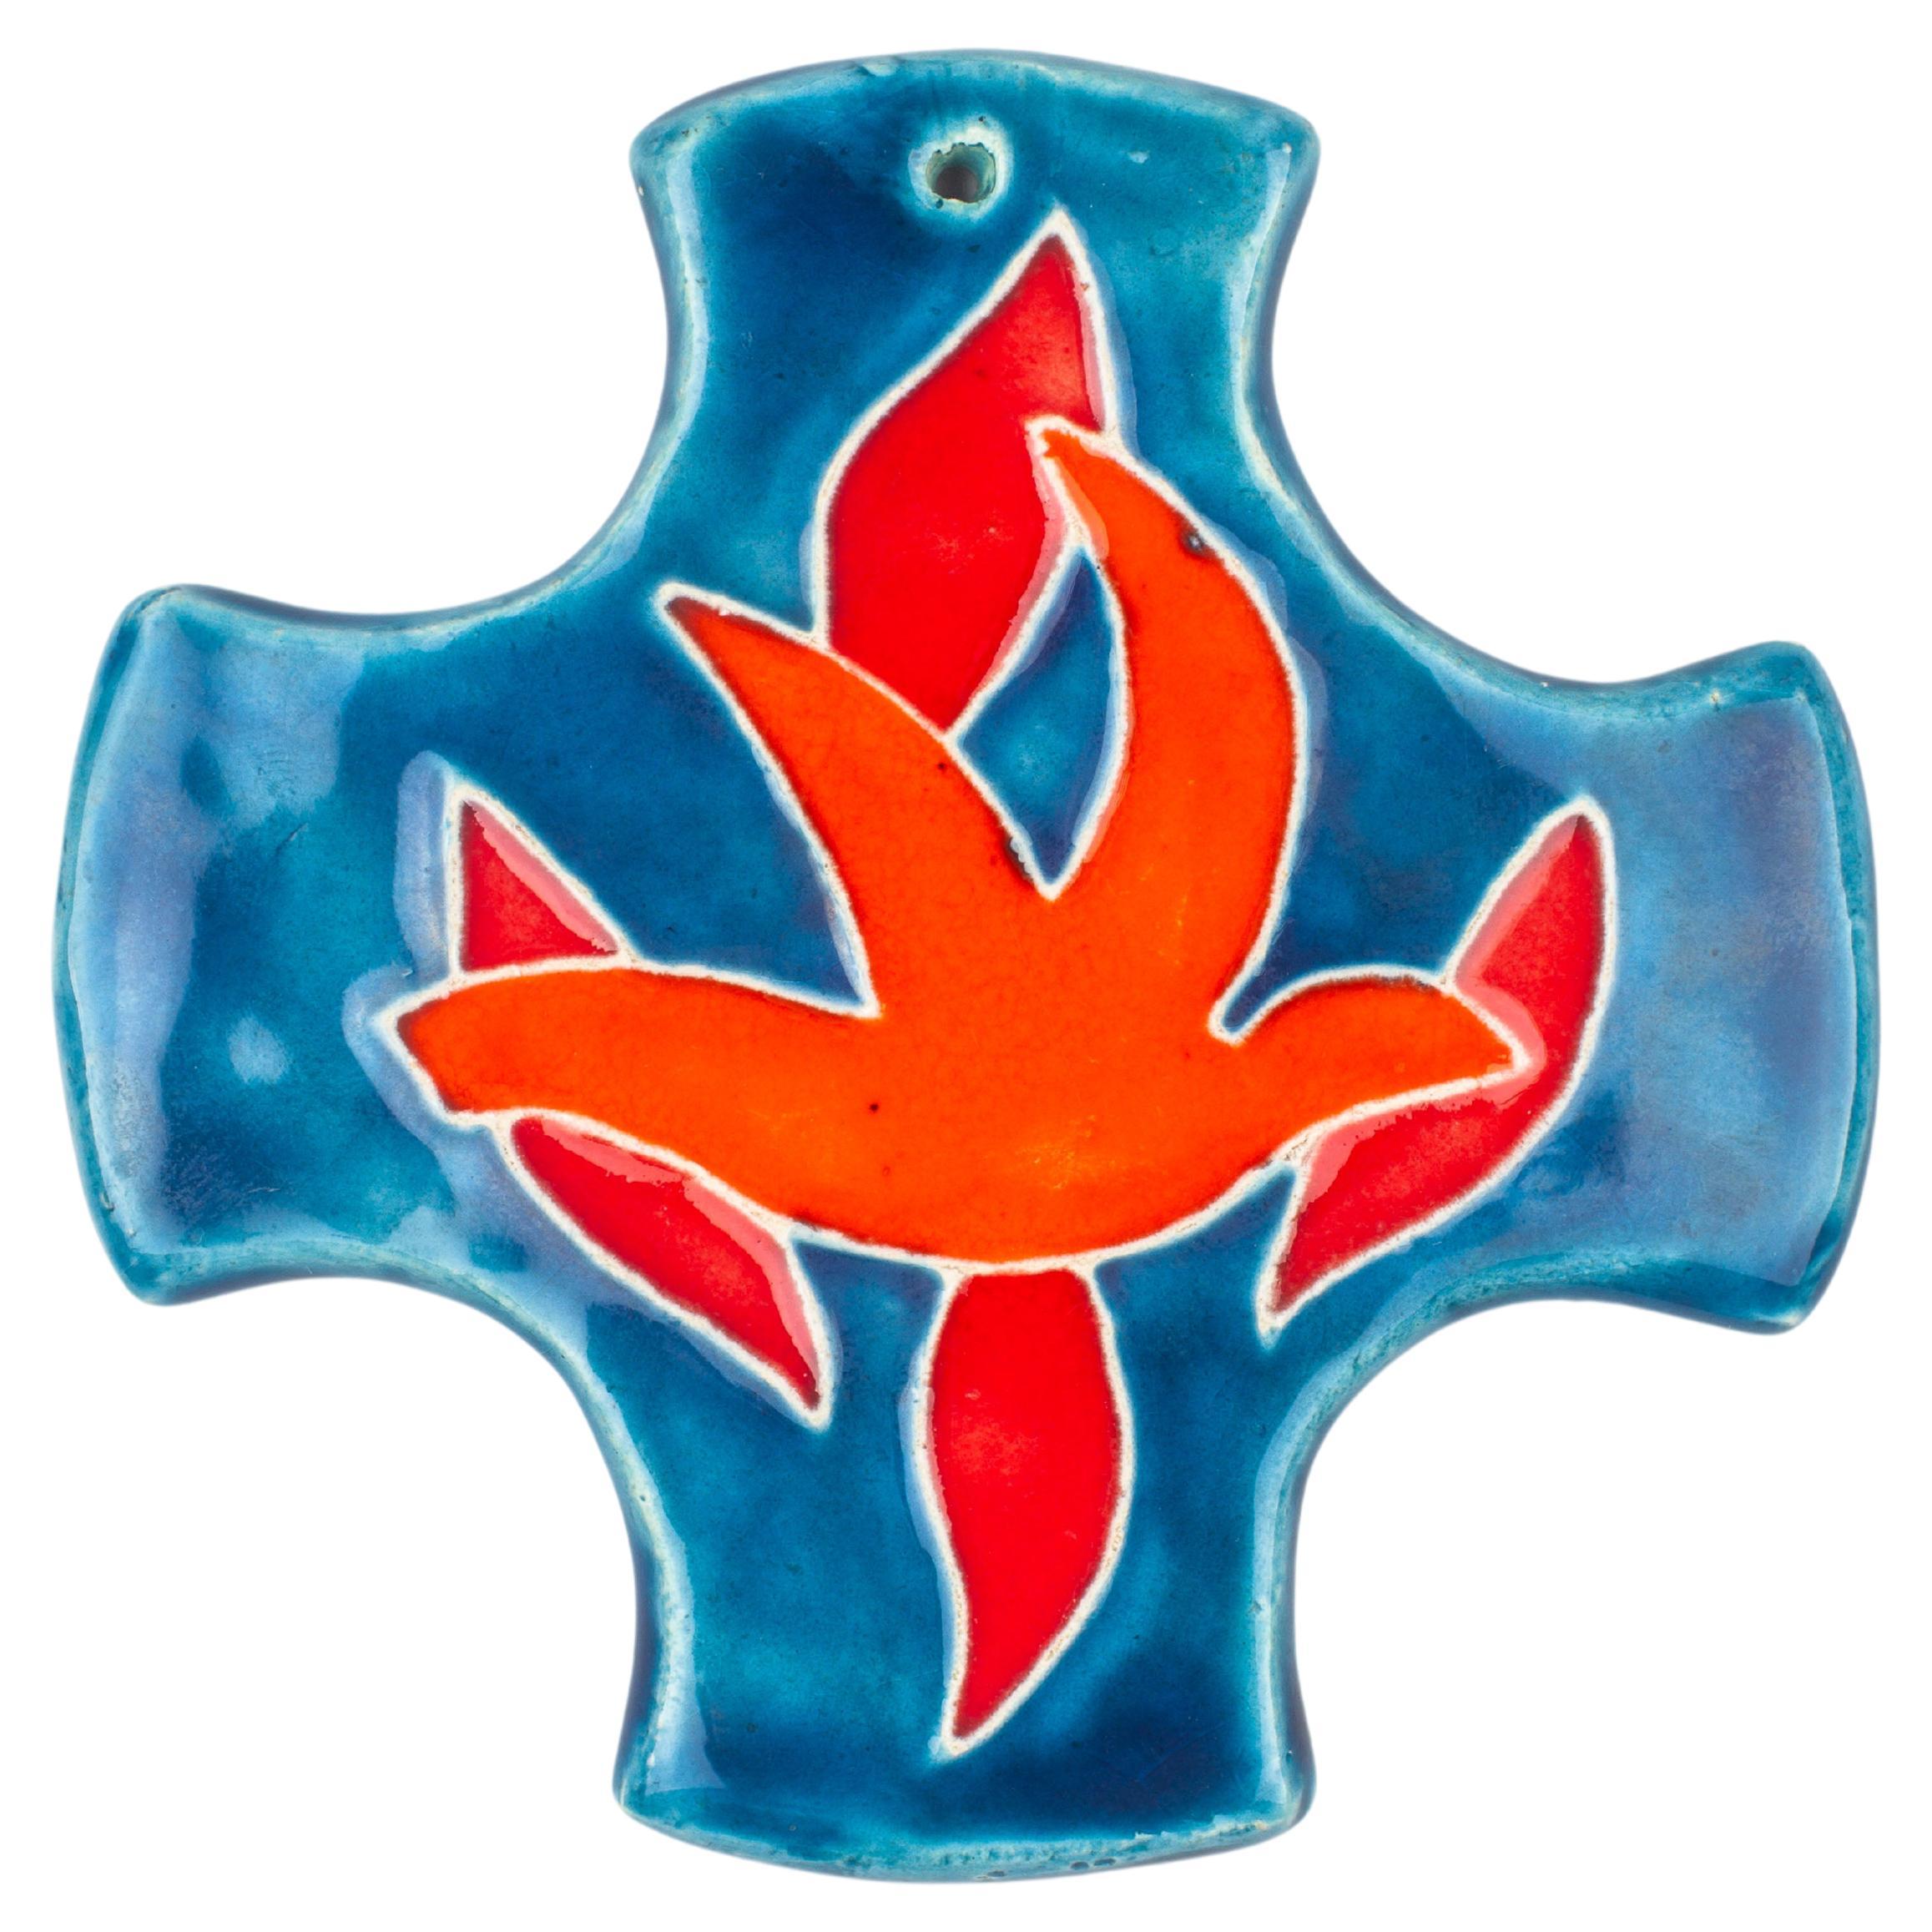 Croix en céramique moderne du milieu du siècle dernier avec motif abstrait